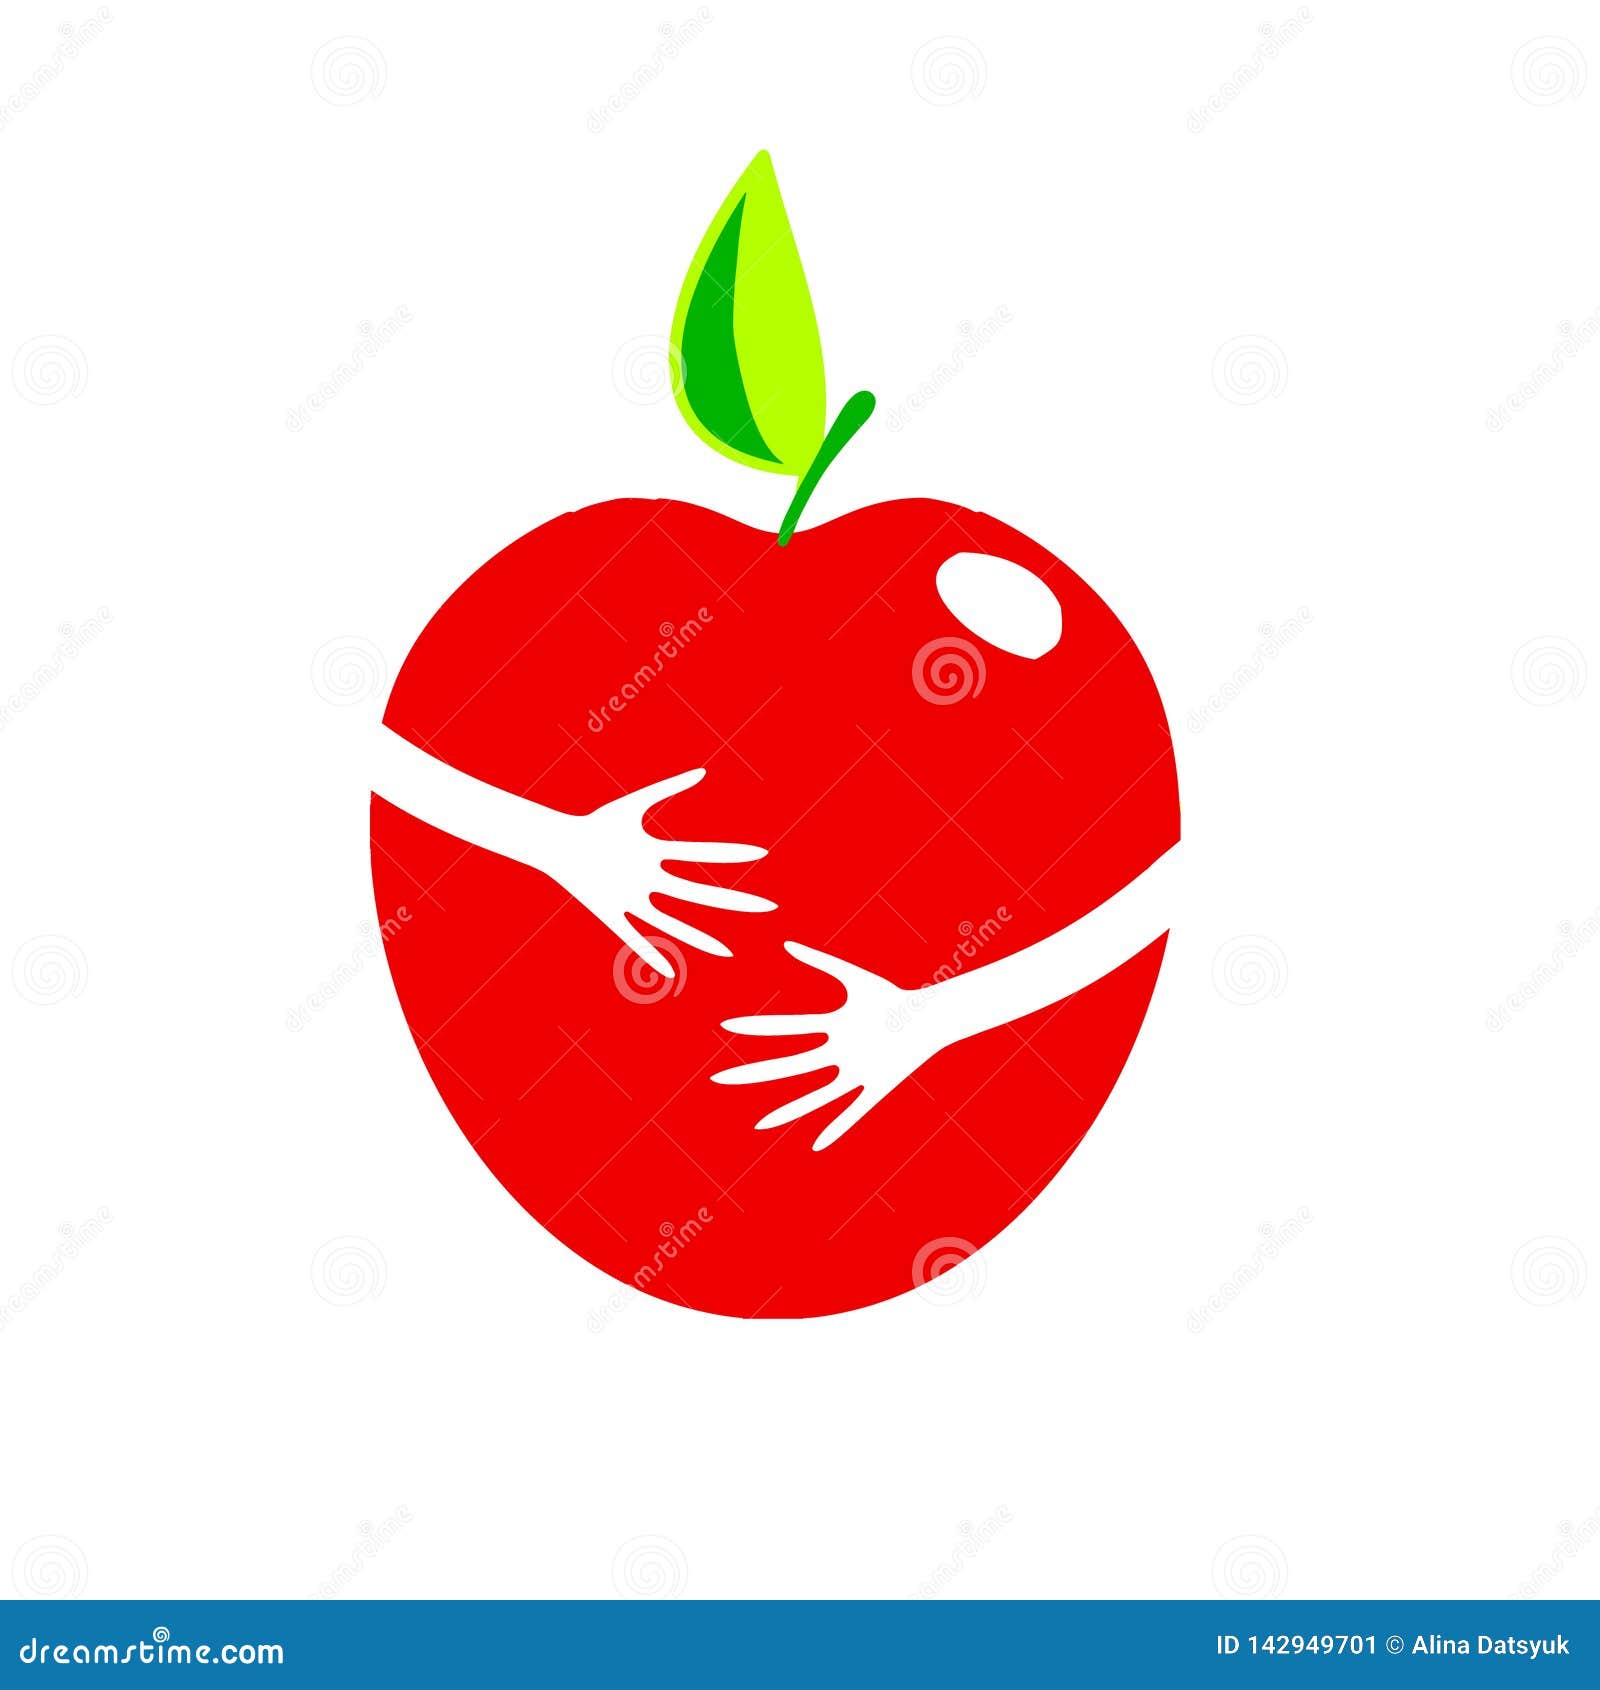 Яблоко в руке рисунок